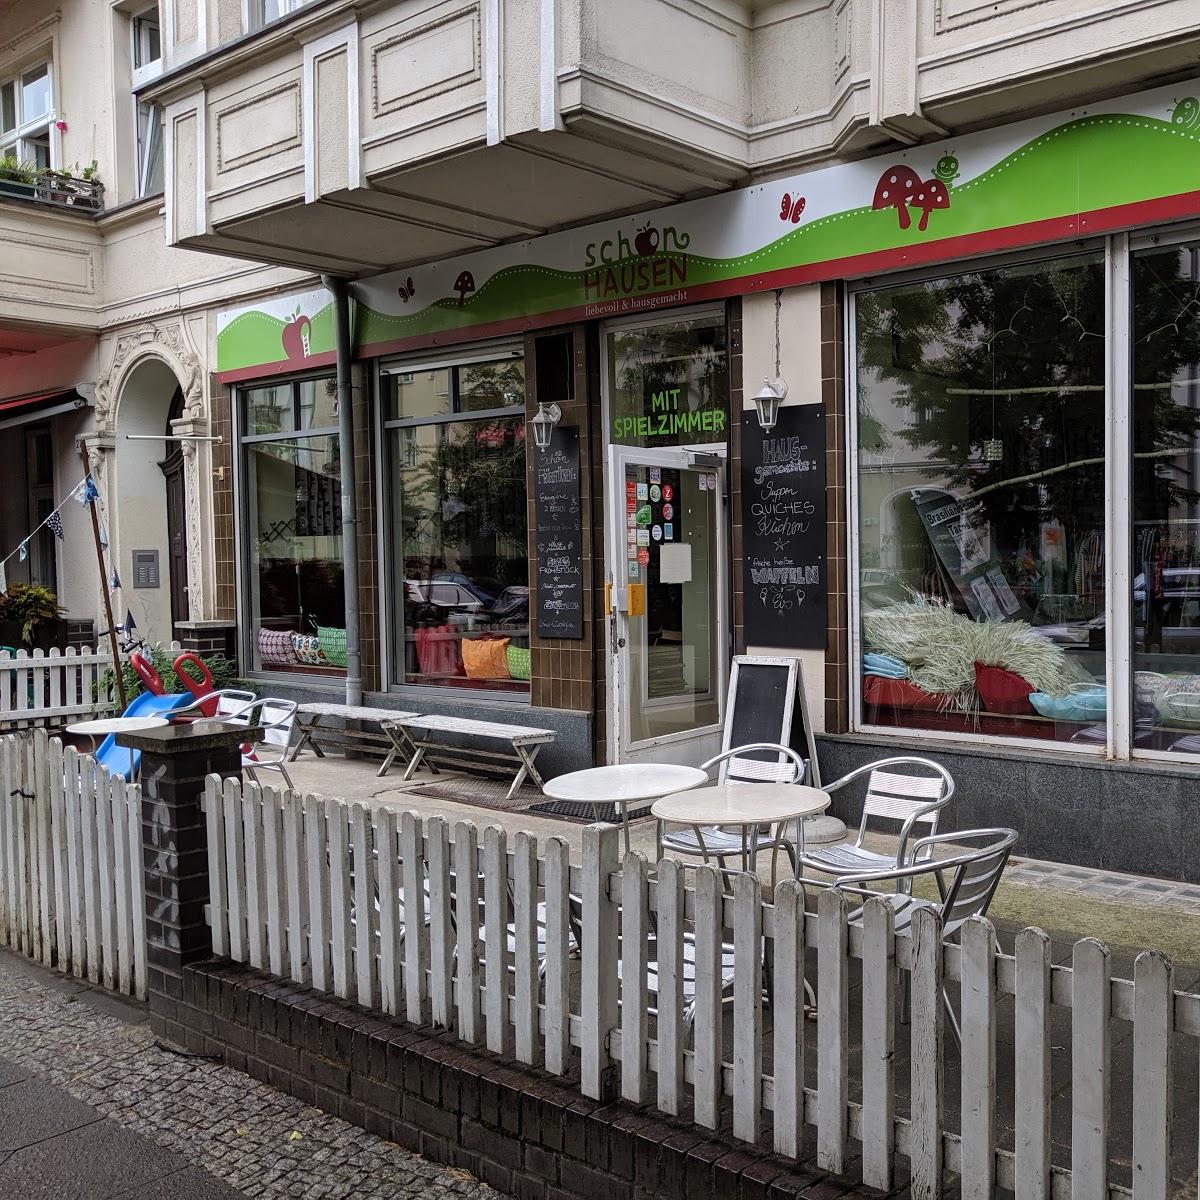 Restaurant "Café Schönhausen" in Berlin